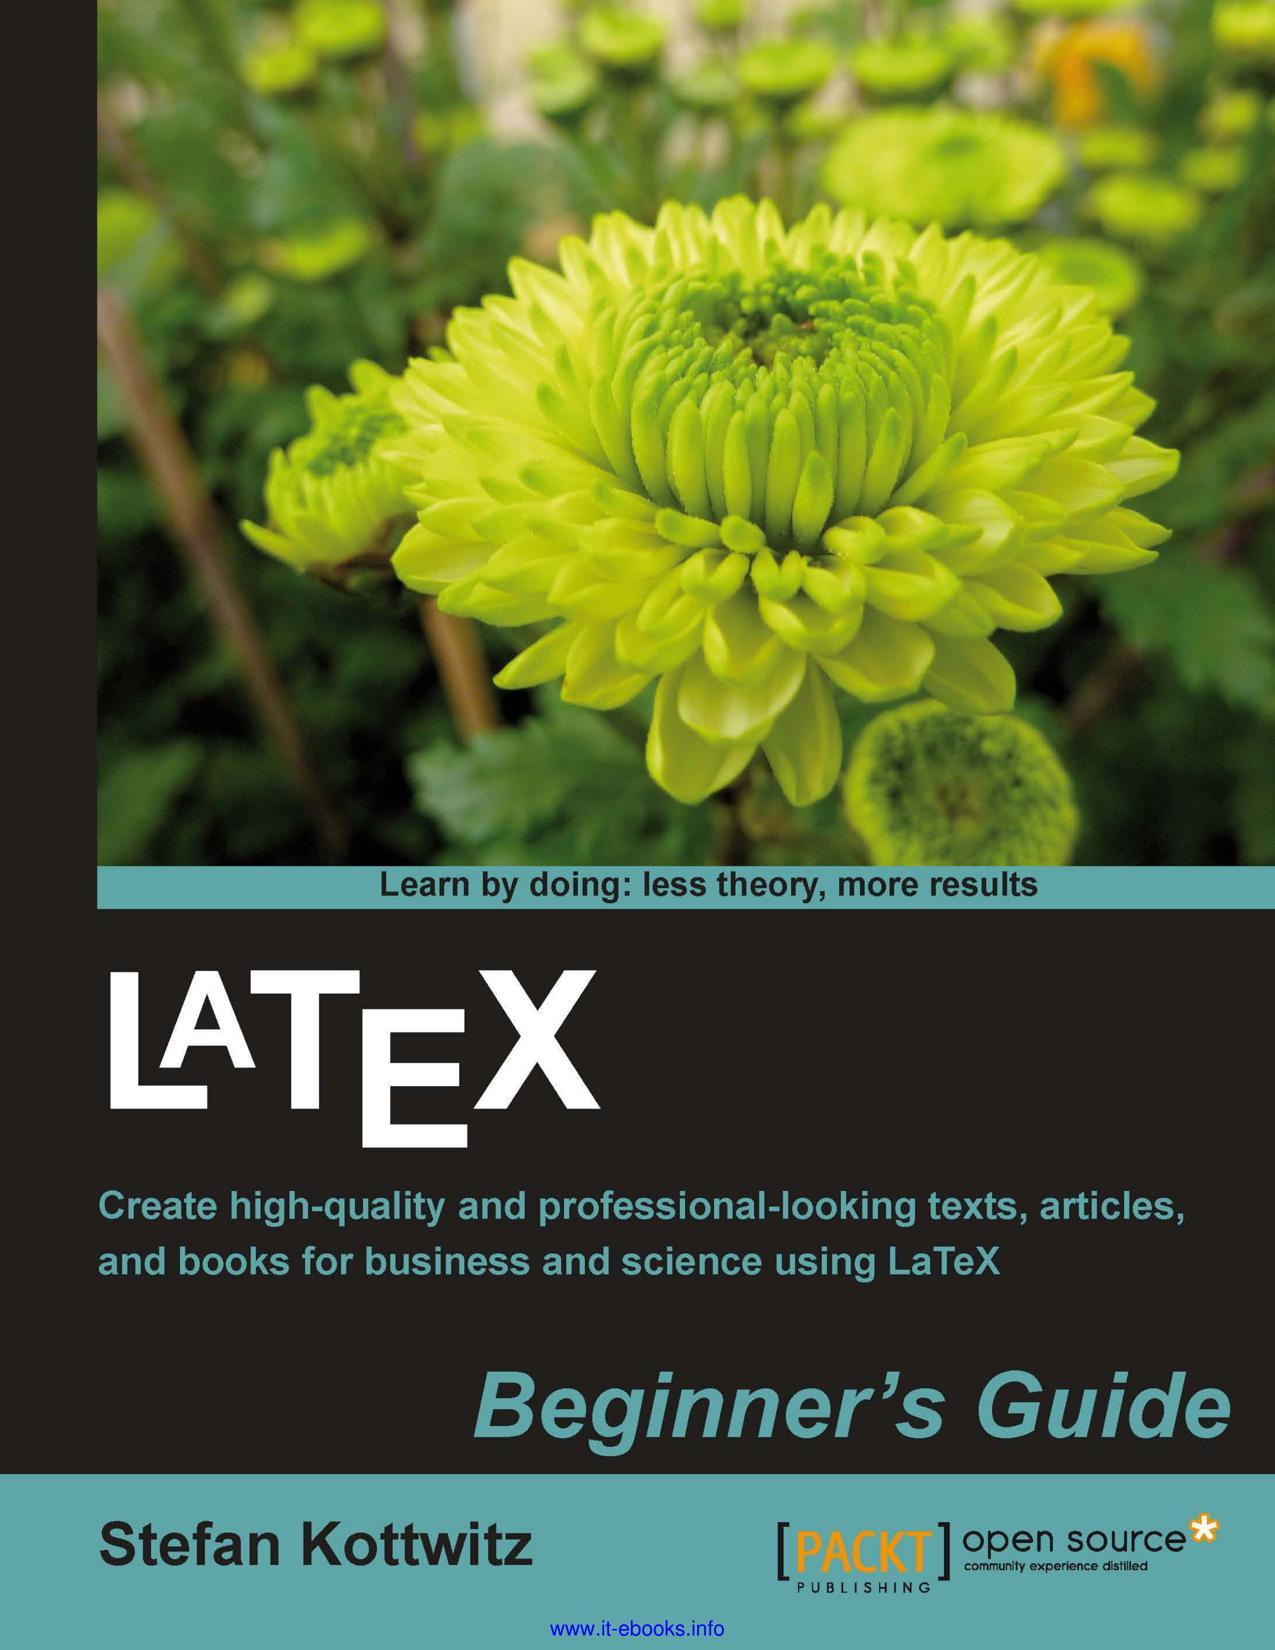 Thumbnail of book LaTeX Beginner's Guide - Stefan Kottwitz cover